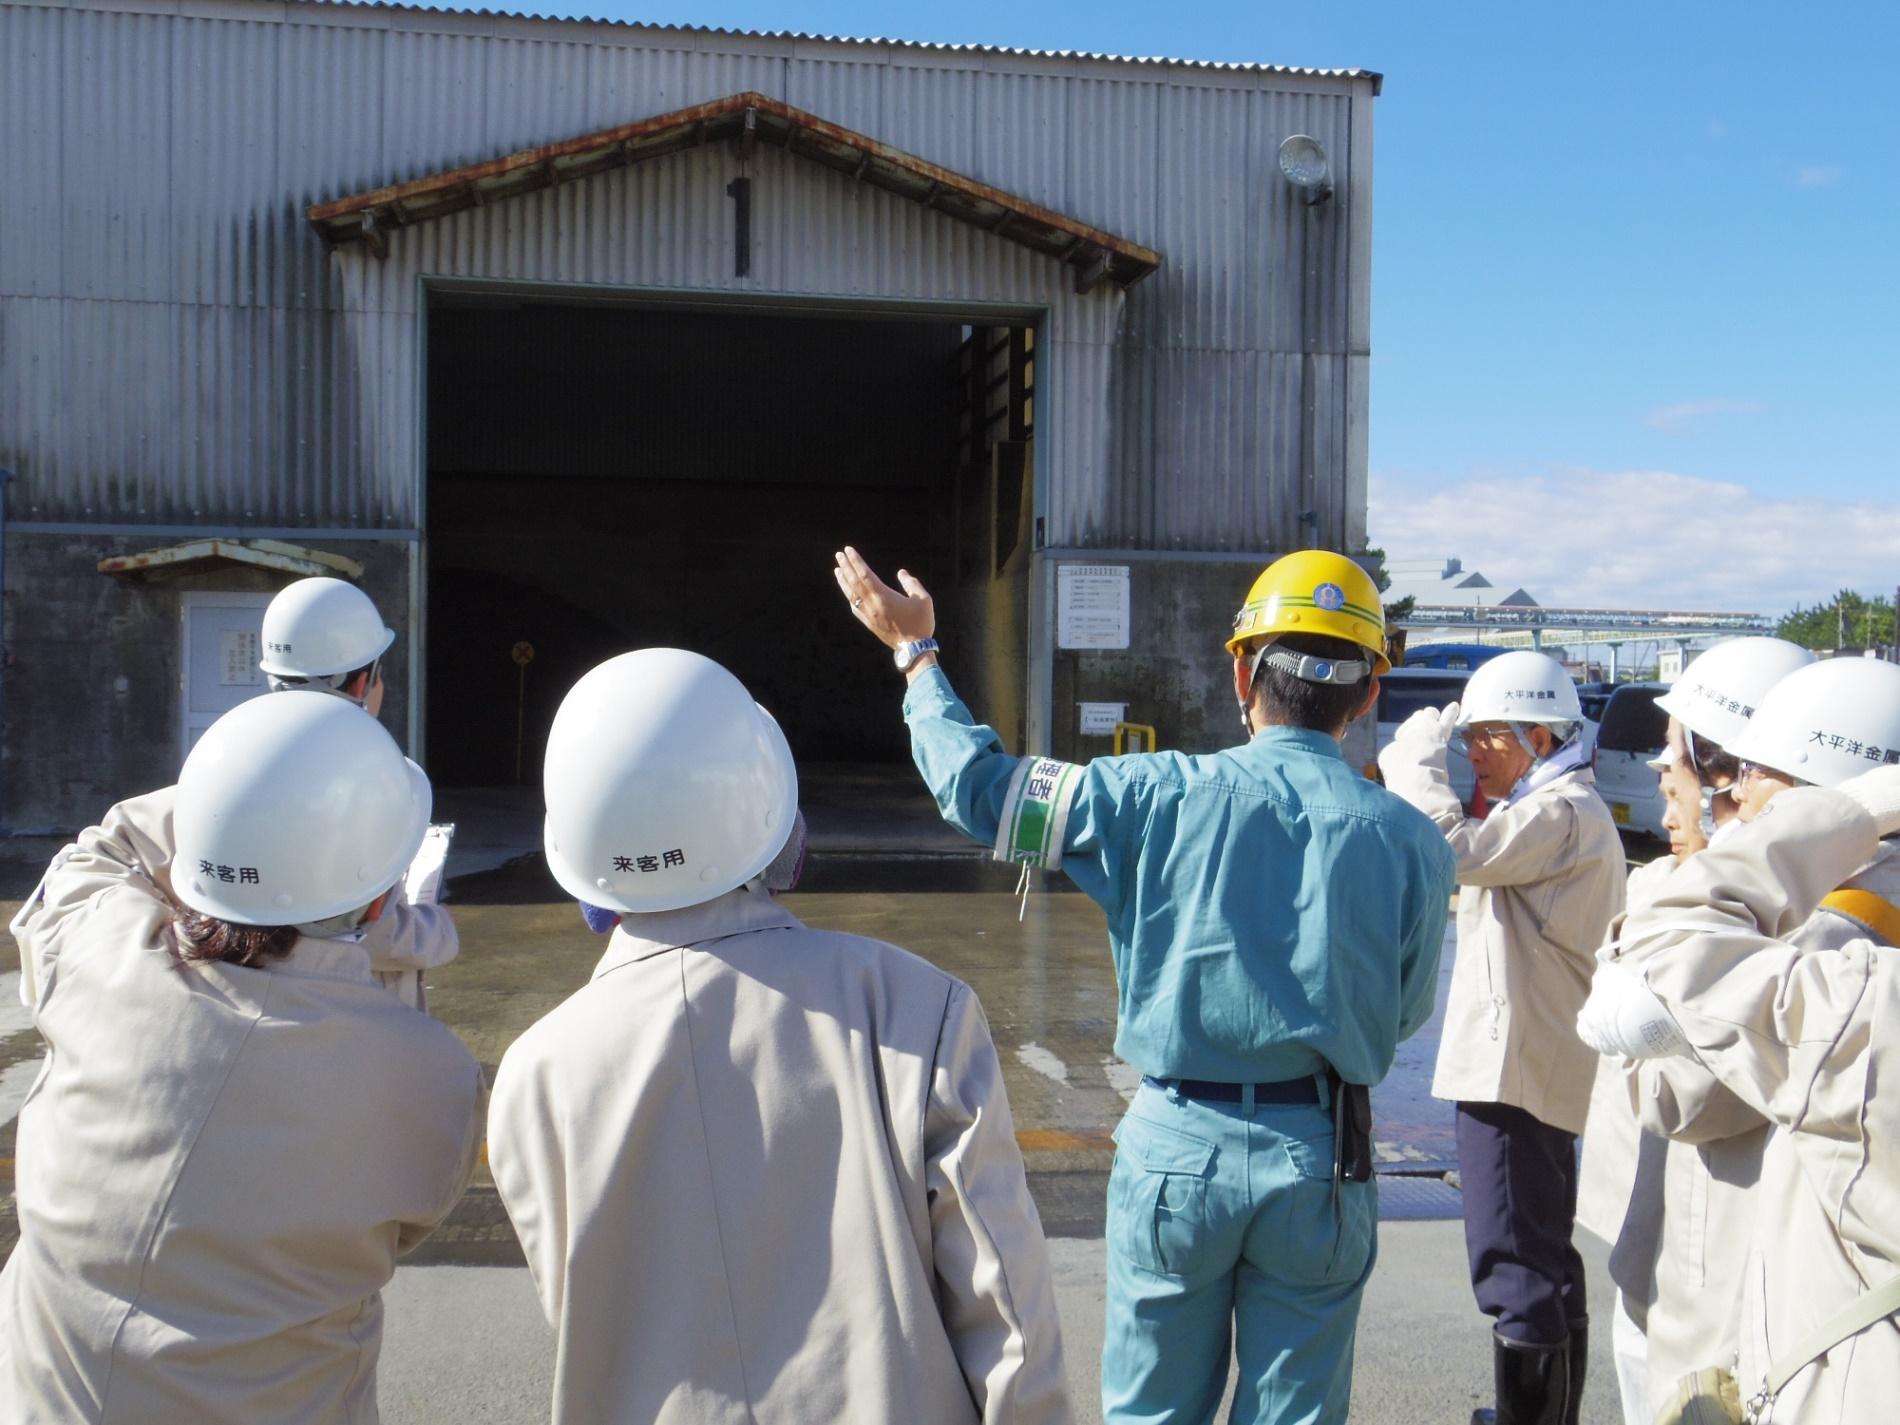 倉庫のような建物の一般廃棄物置き場で、黄色いヘルメットを被り左手を挙げて説明をしている大平洋金属株式会社社員と話を聞いているエコツアー参加者の写真